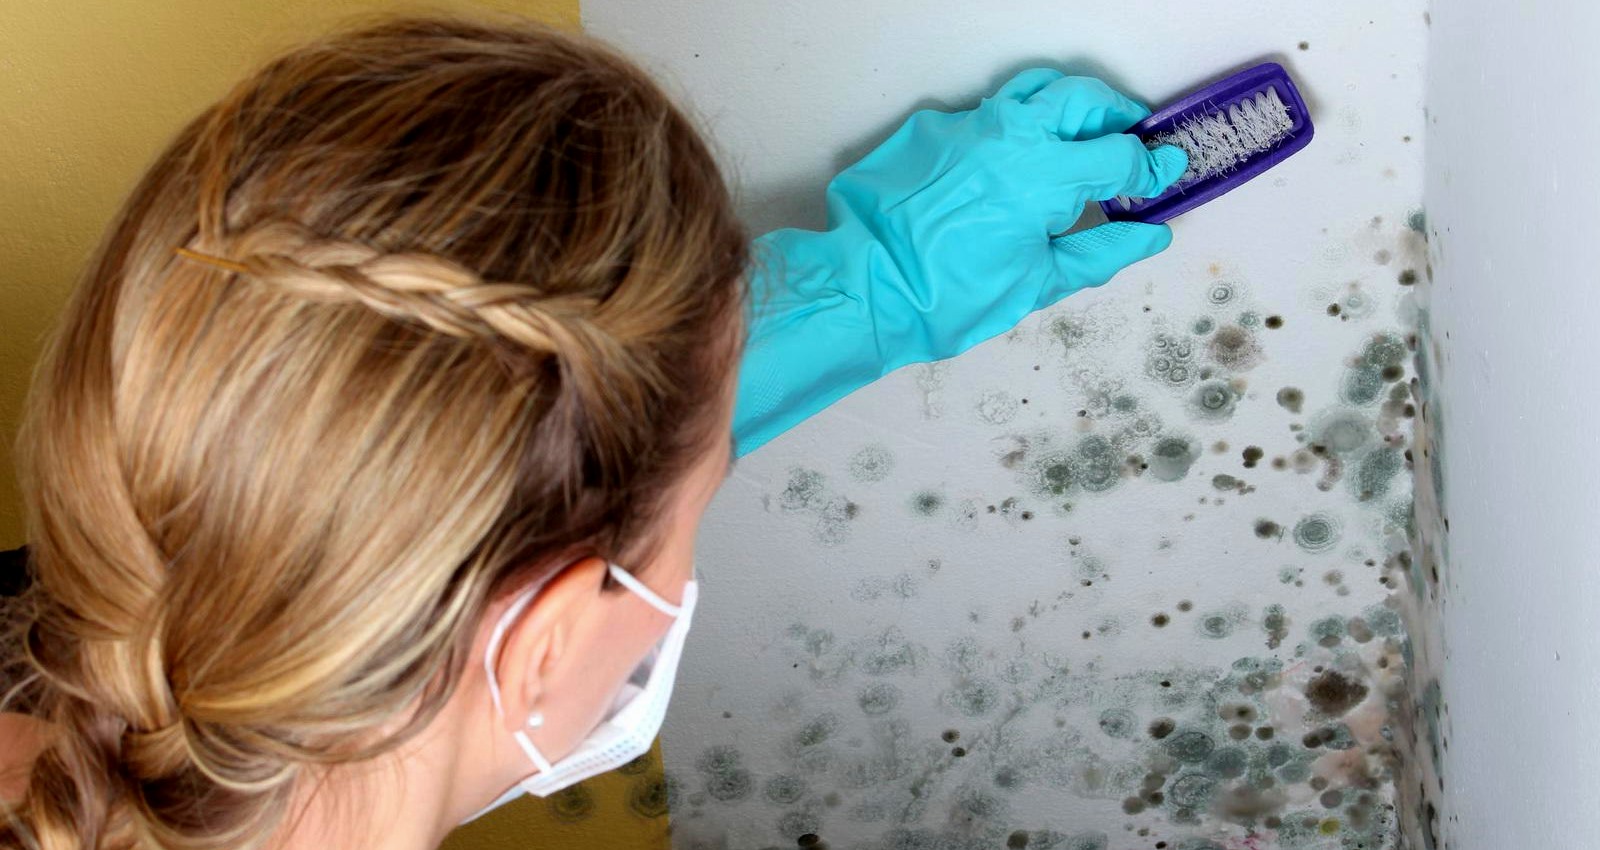  Quelles sont les mesures que les experts prennent afin de localiser le développement caché de colonies de moisissures, dans le cadre d’un processus de nettoyage ?